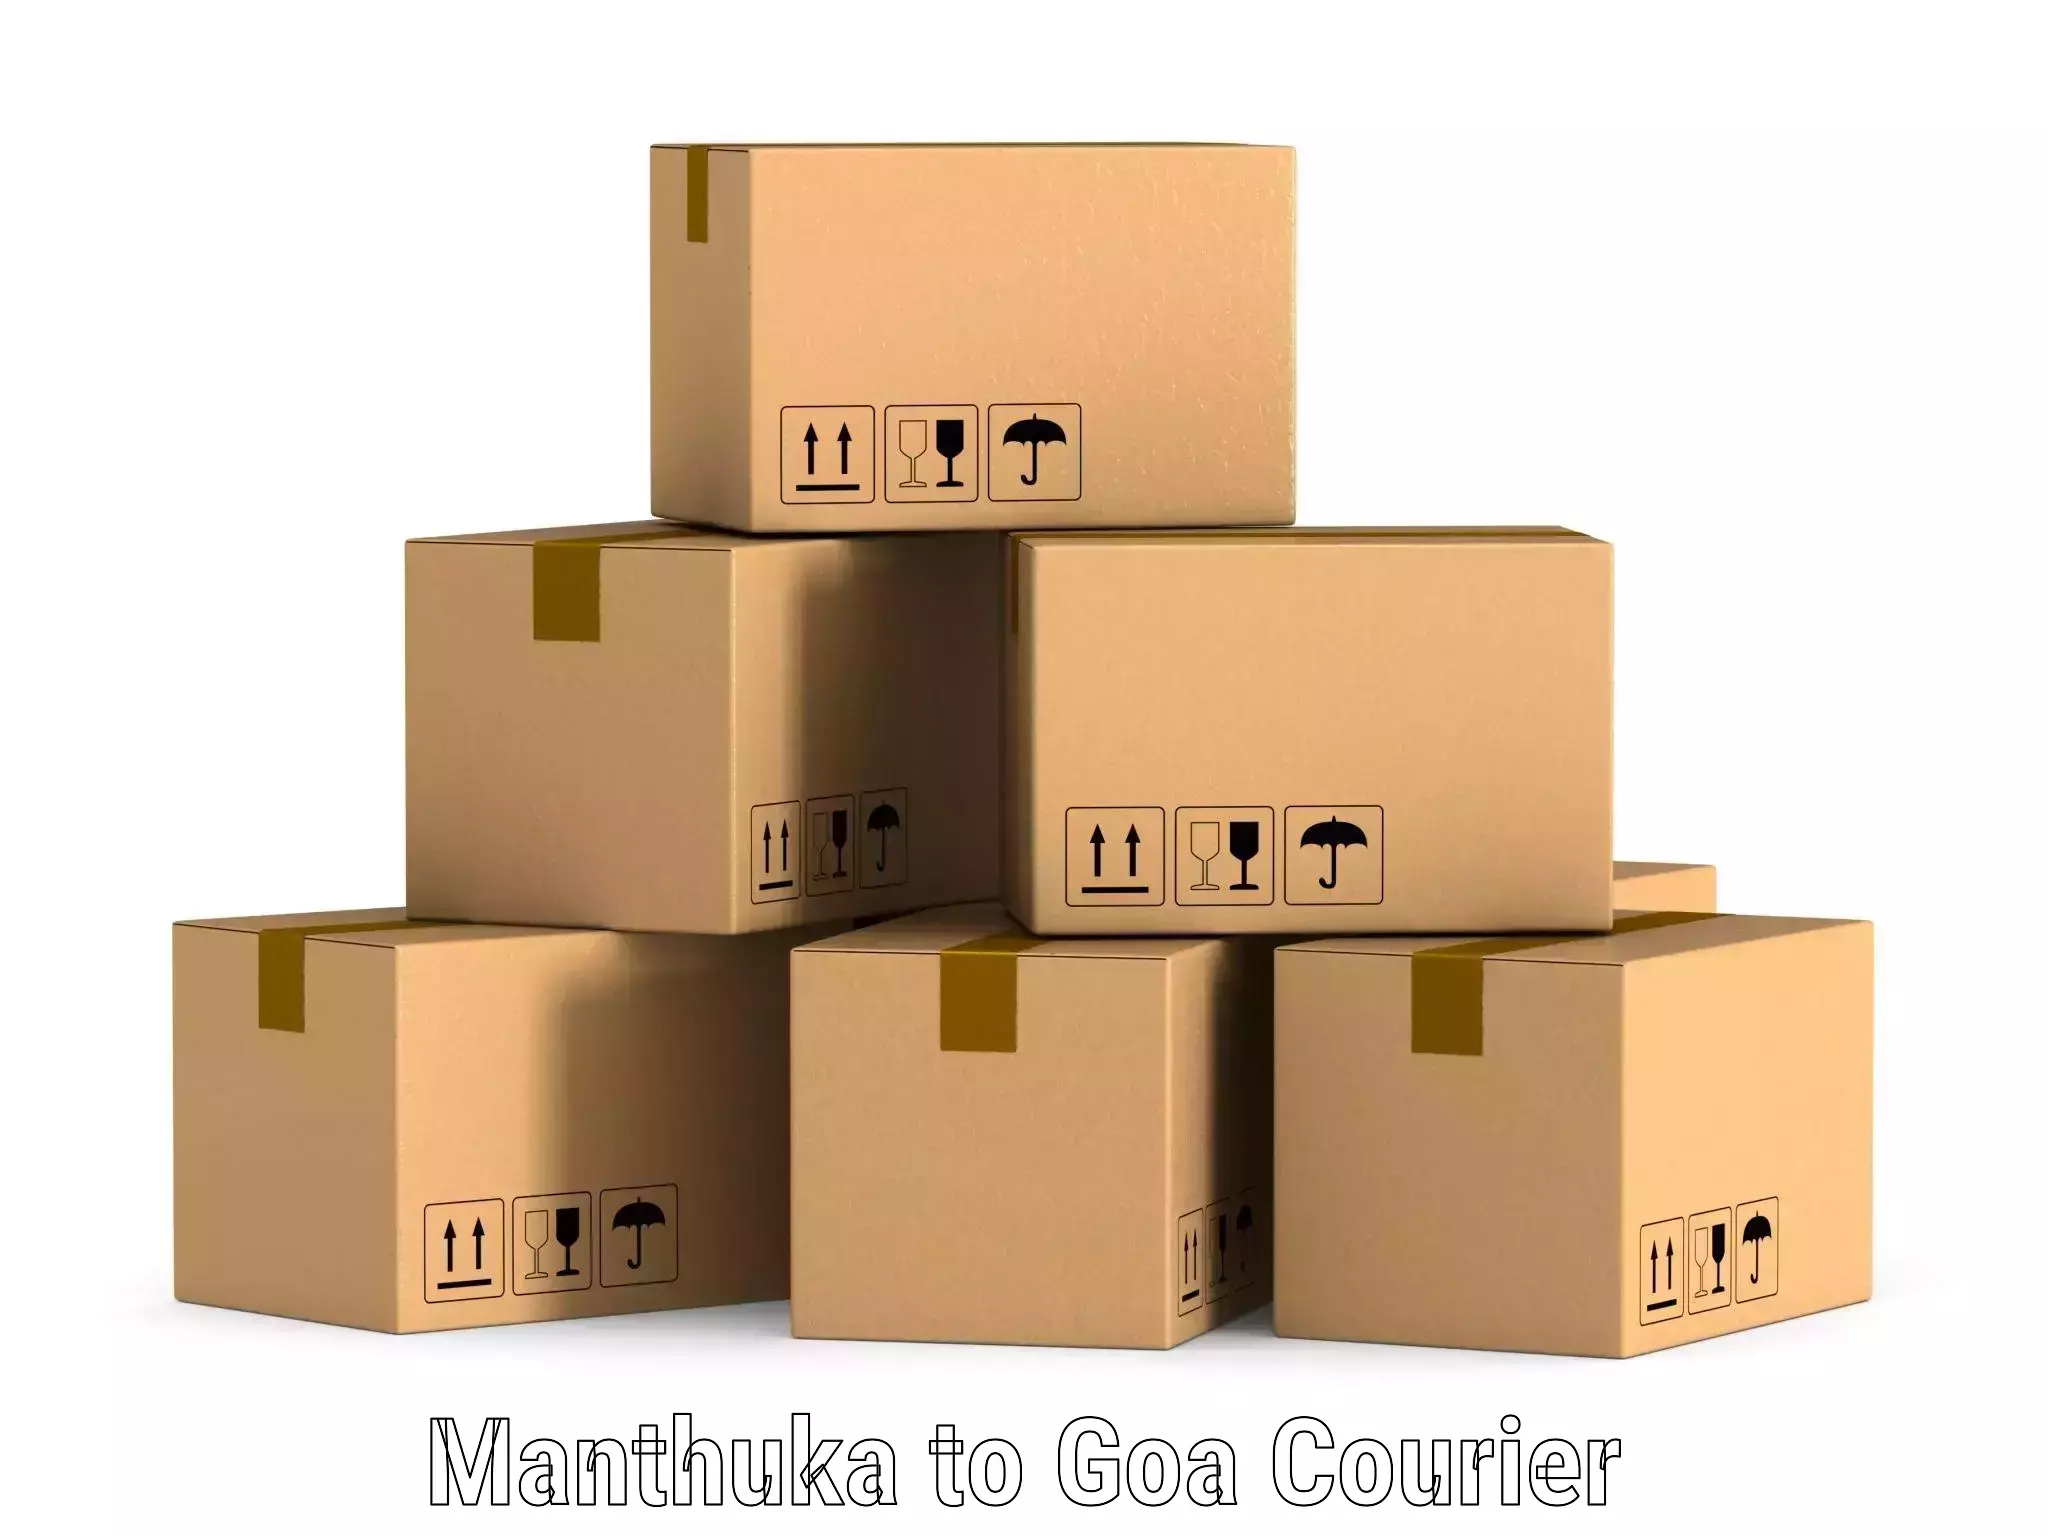 Supply chain efficiency Manthuka to Canacona